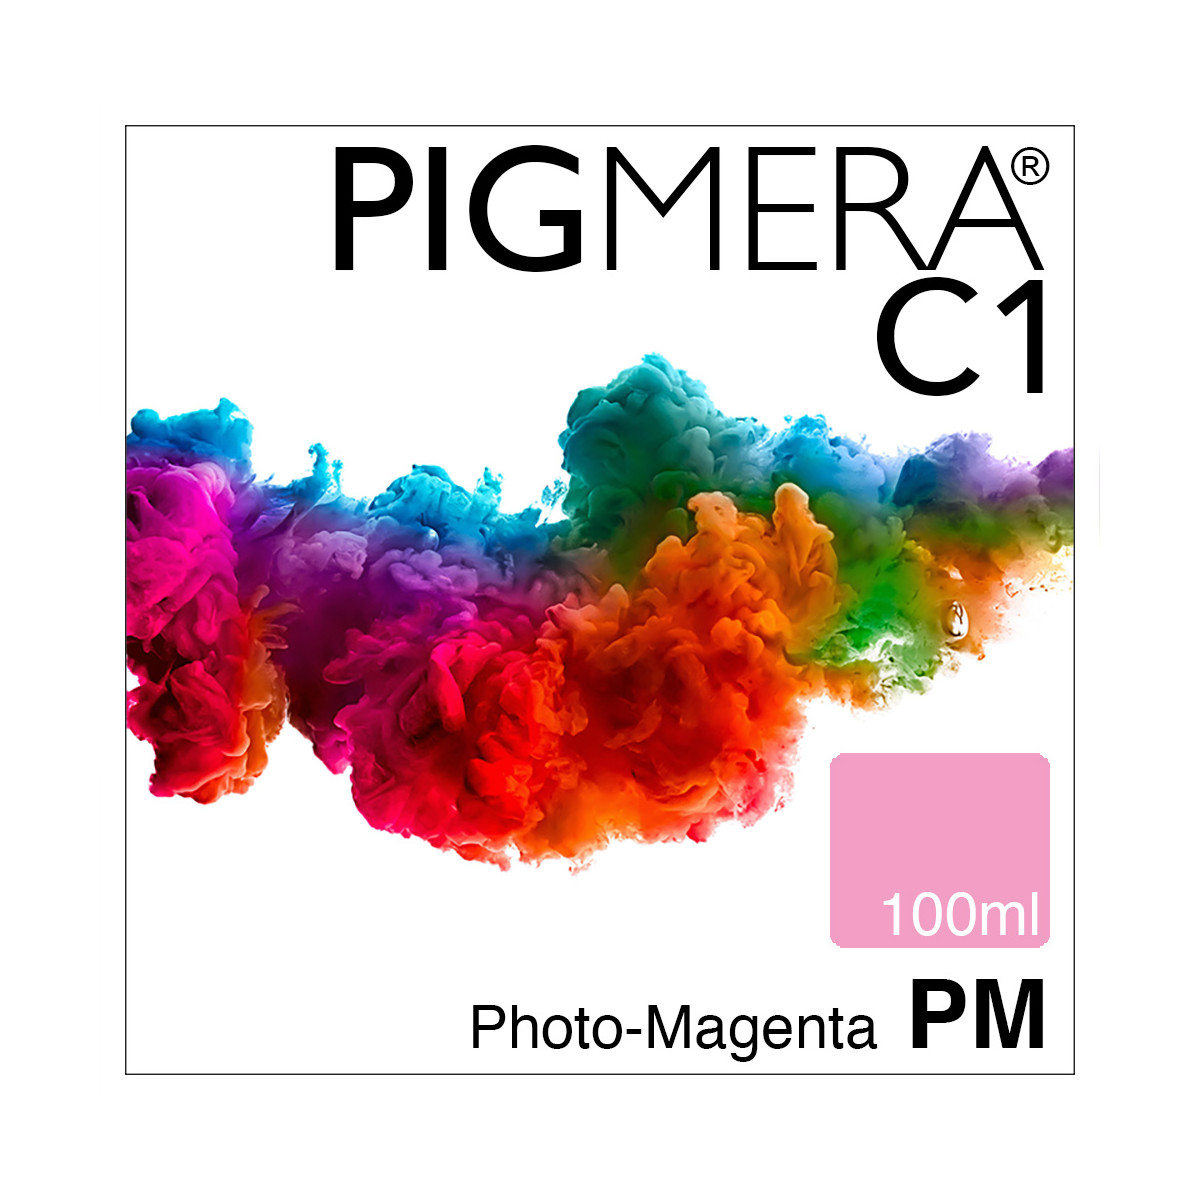 farbenwerk Pigmera C1 Bottle Photo-Magenta 100ml